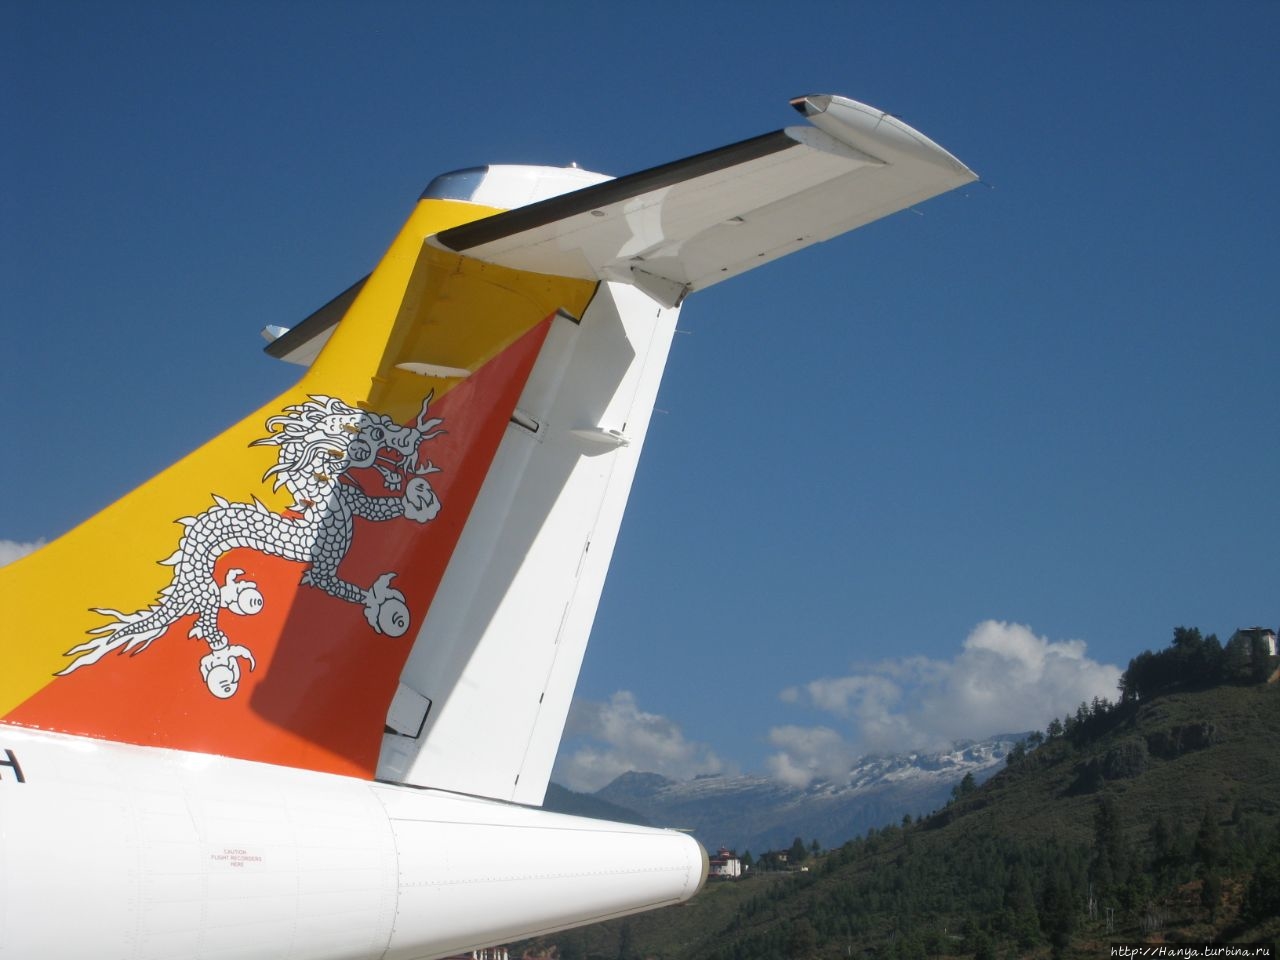 Аэропорт Паро Паро, Бутан